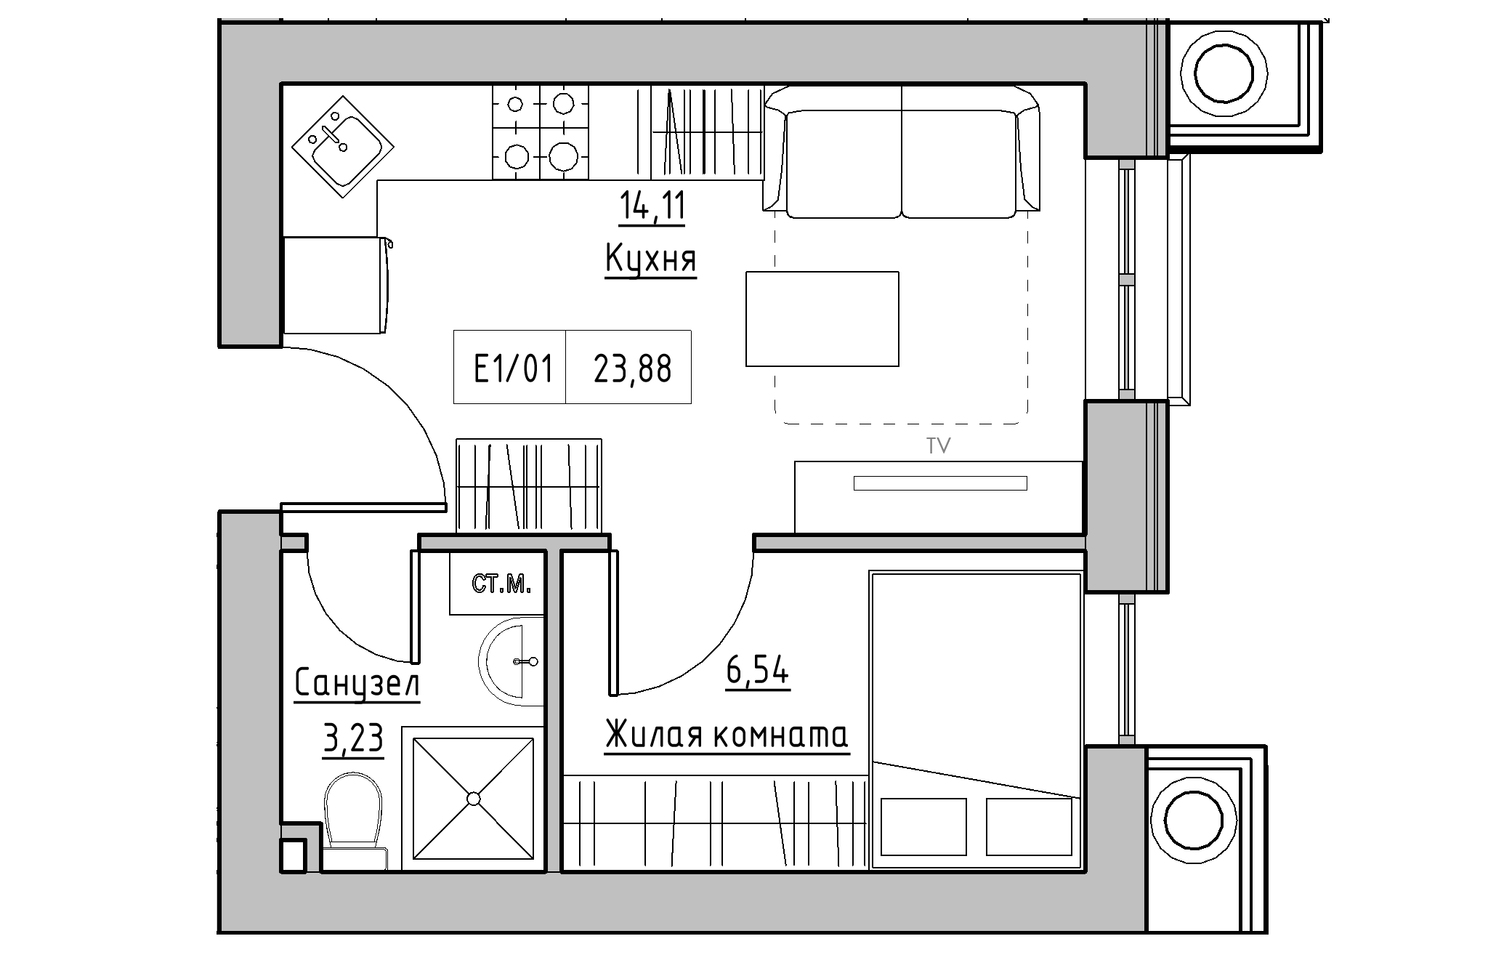 Планировка 1-к квартира площей 23.88м2, KS-010-05/0014.